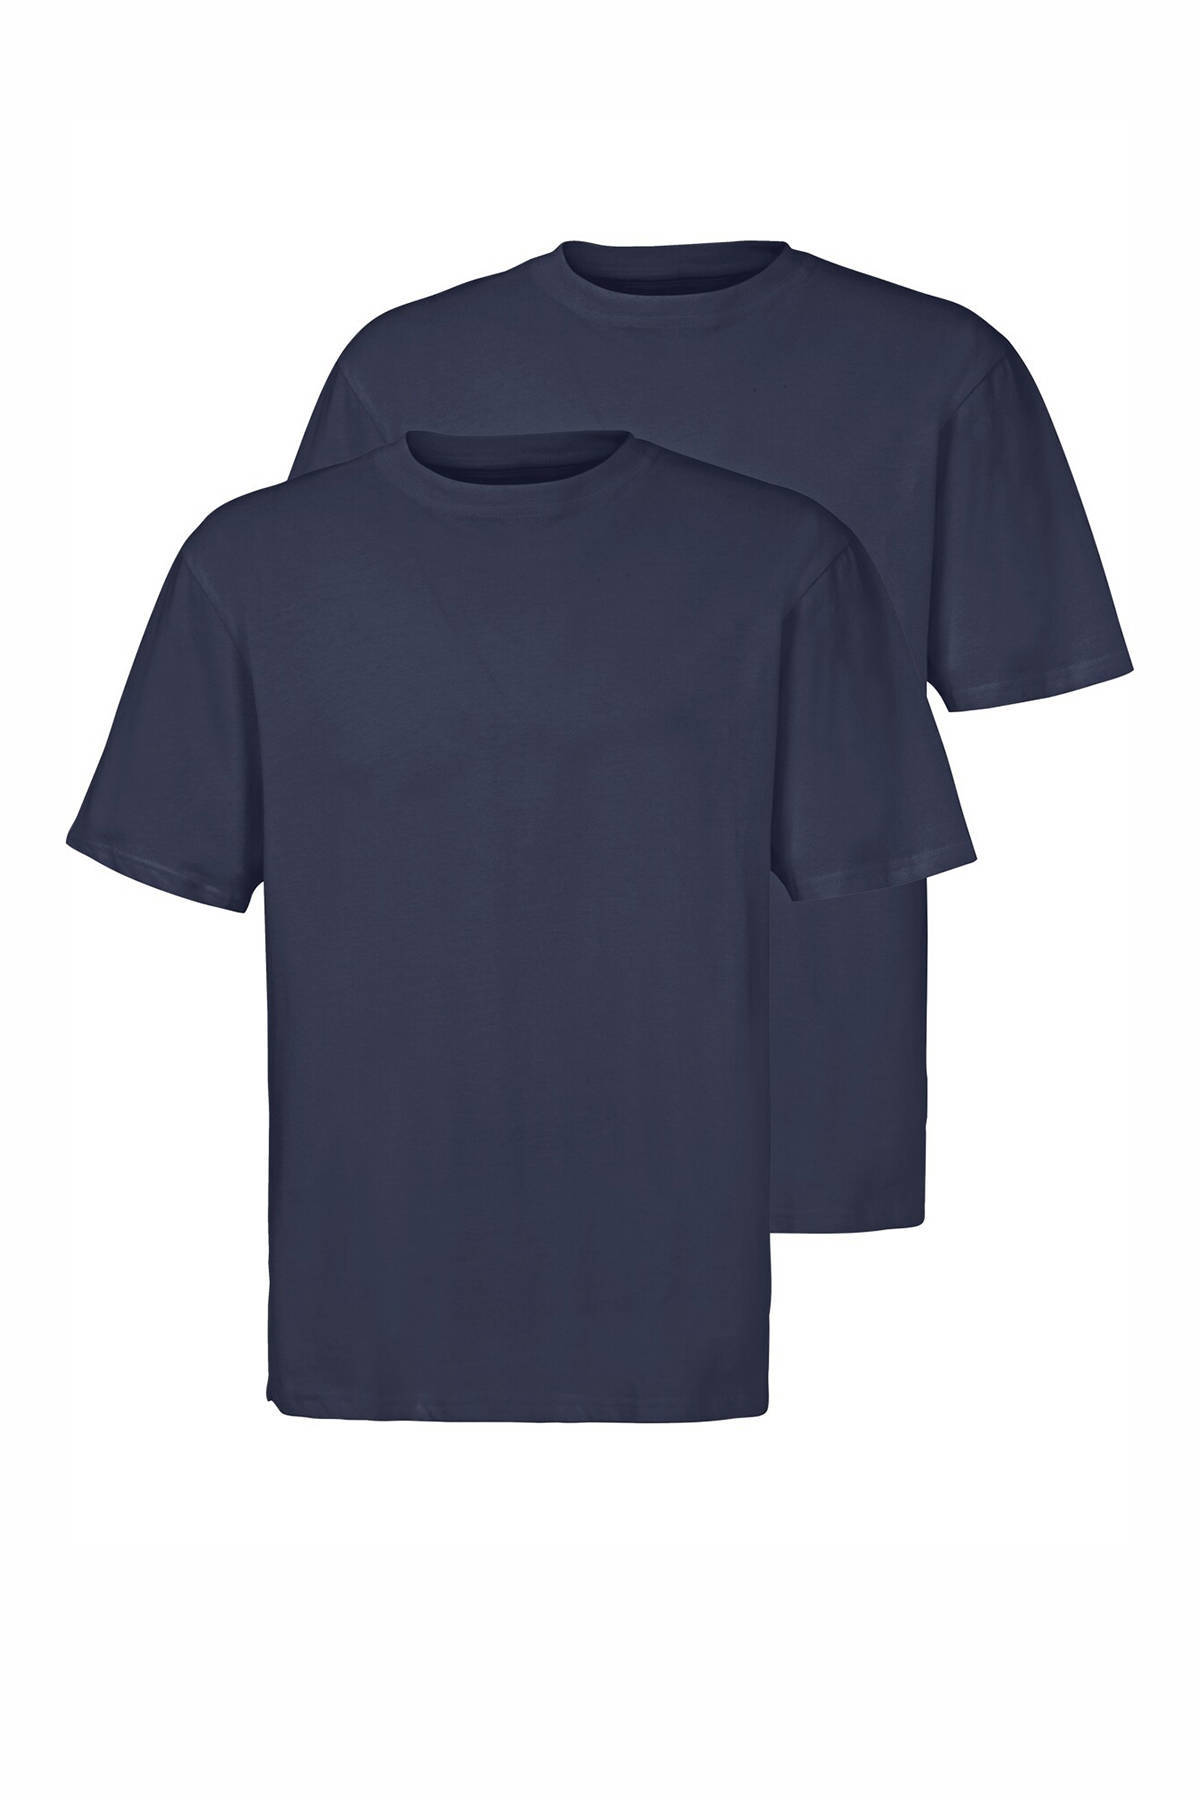 Jan Vanderstorm T shirt(set van 2)ERKE donkerblauw online kopen